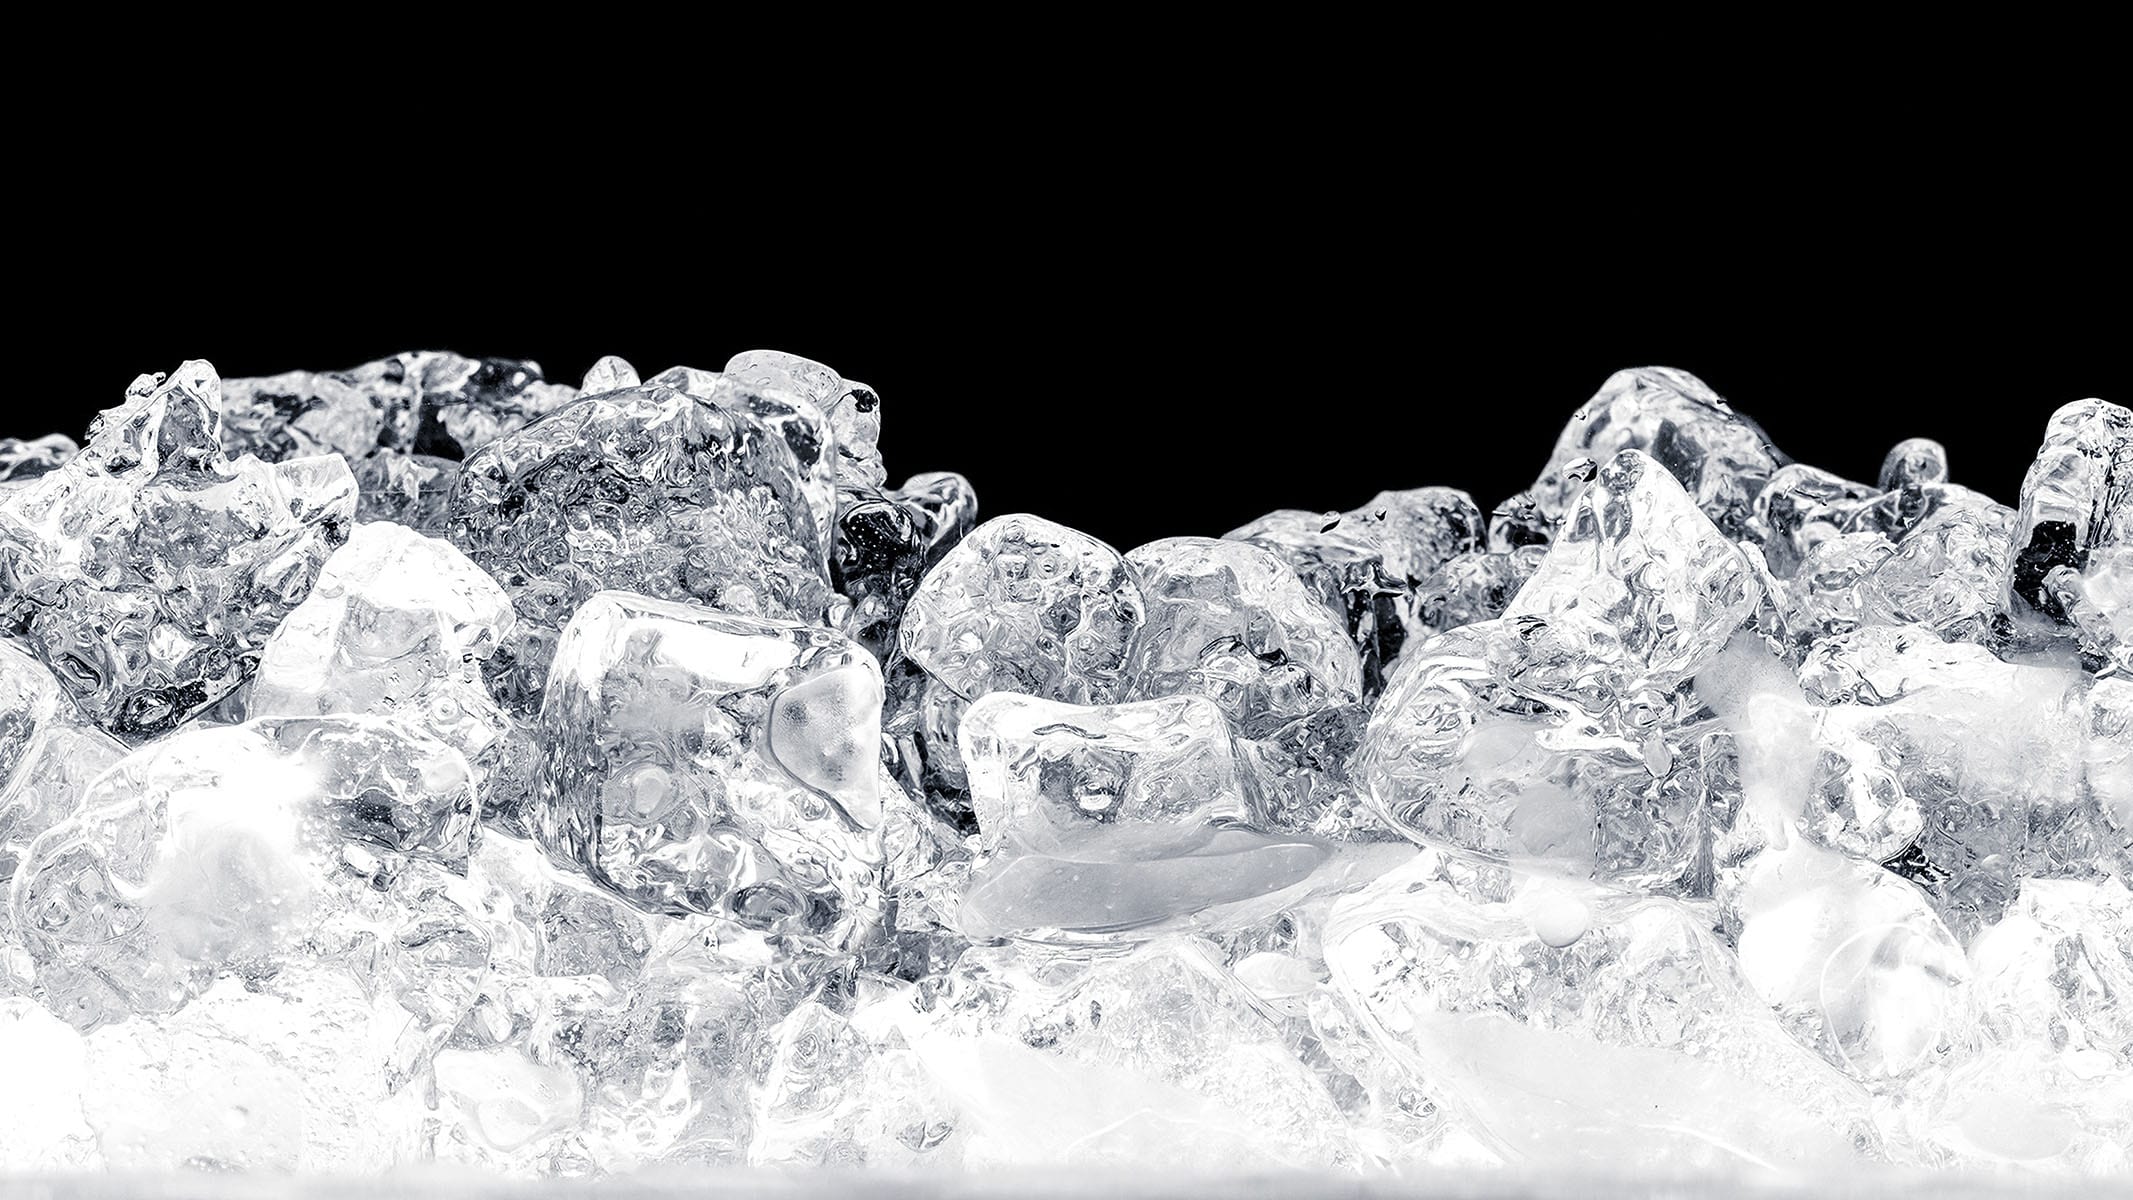 氷のでき方の観察 実験 夏休み 自由研究プロジェクト 学研キッズネット